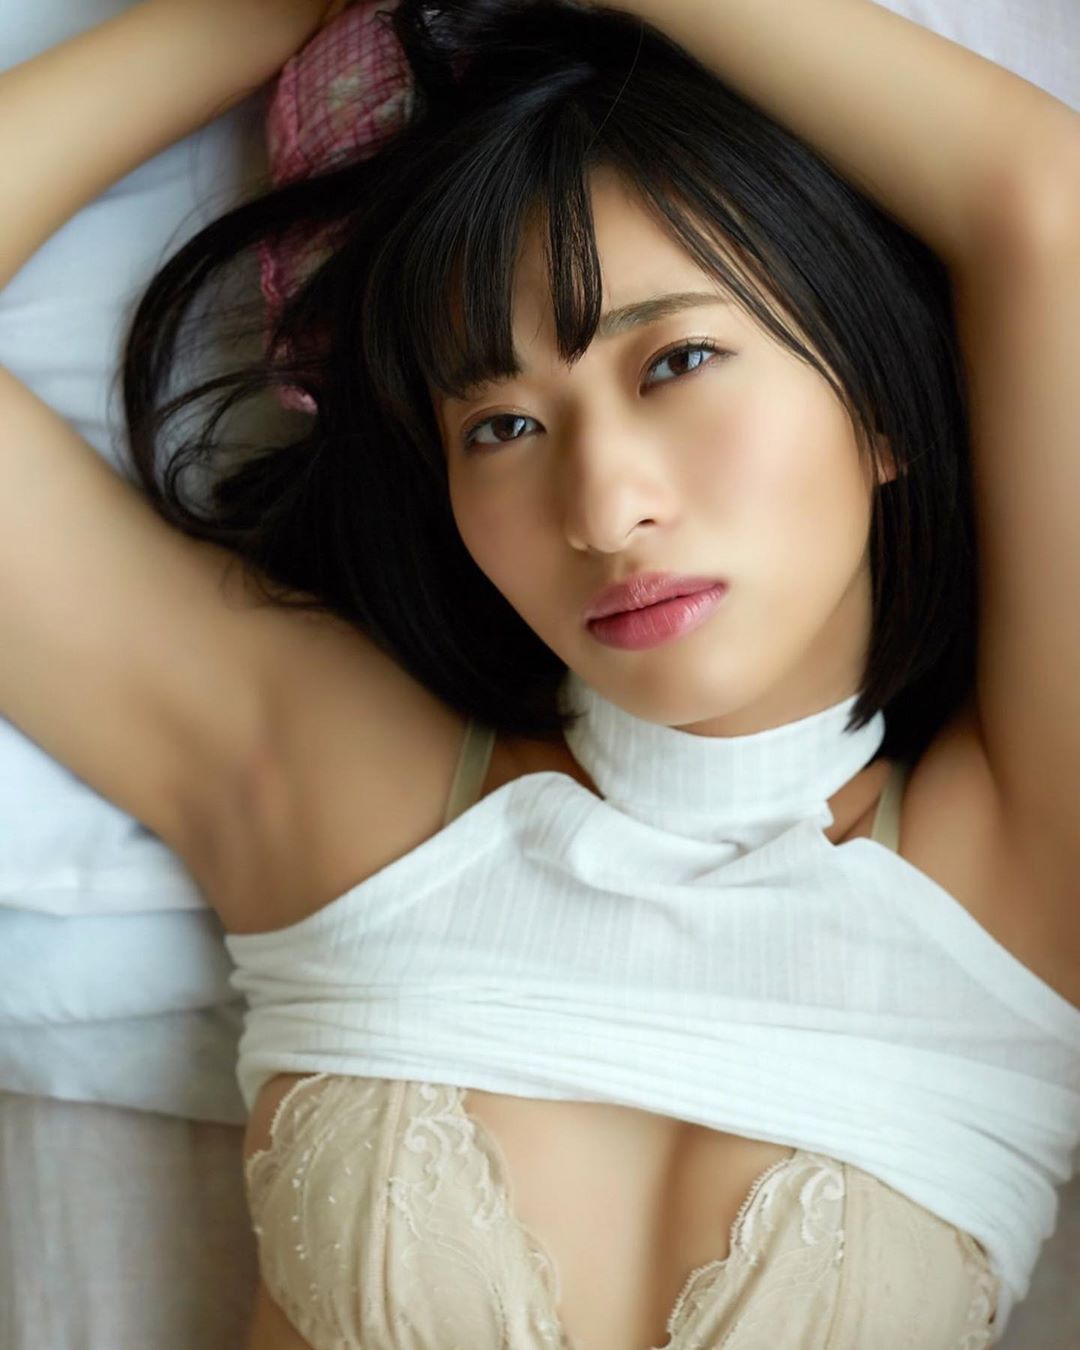 yuka kuramoti Master butt Hot model IG Instagram Facebook.